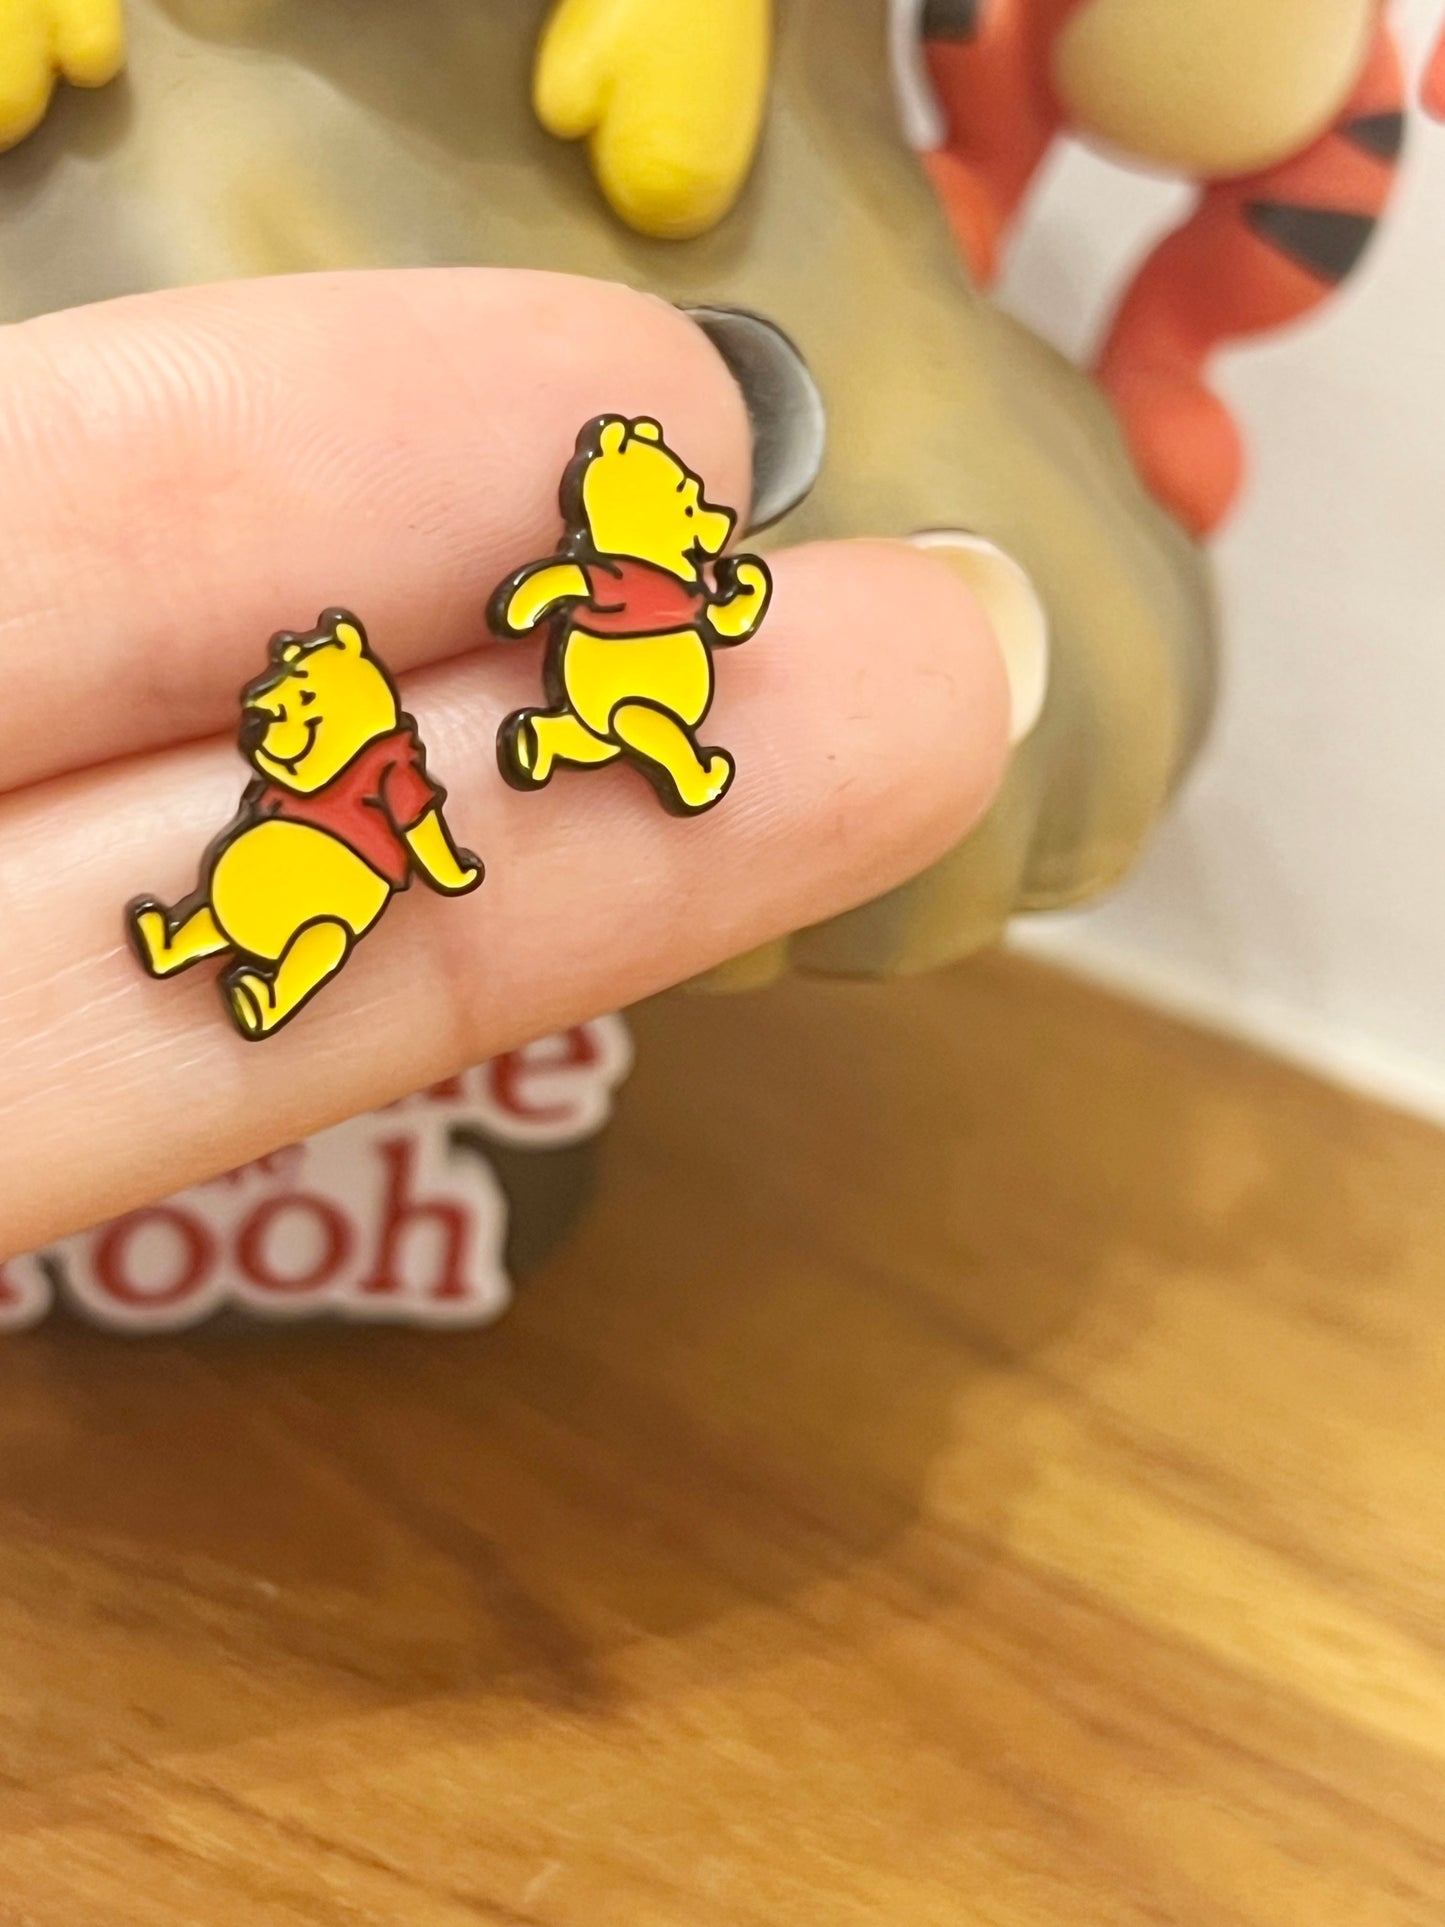 Disney-licensed characters earrings, Winnie the Pooh unbalance stud earrings